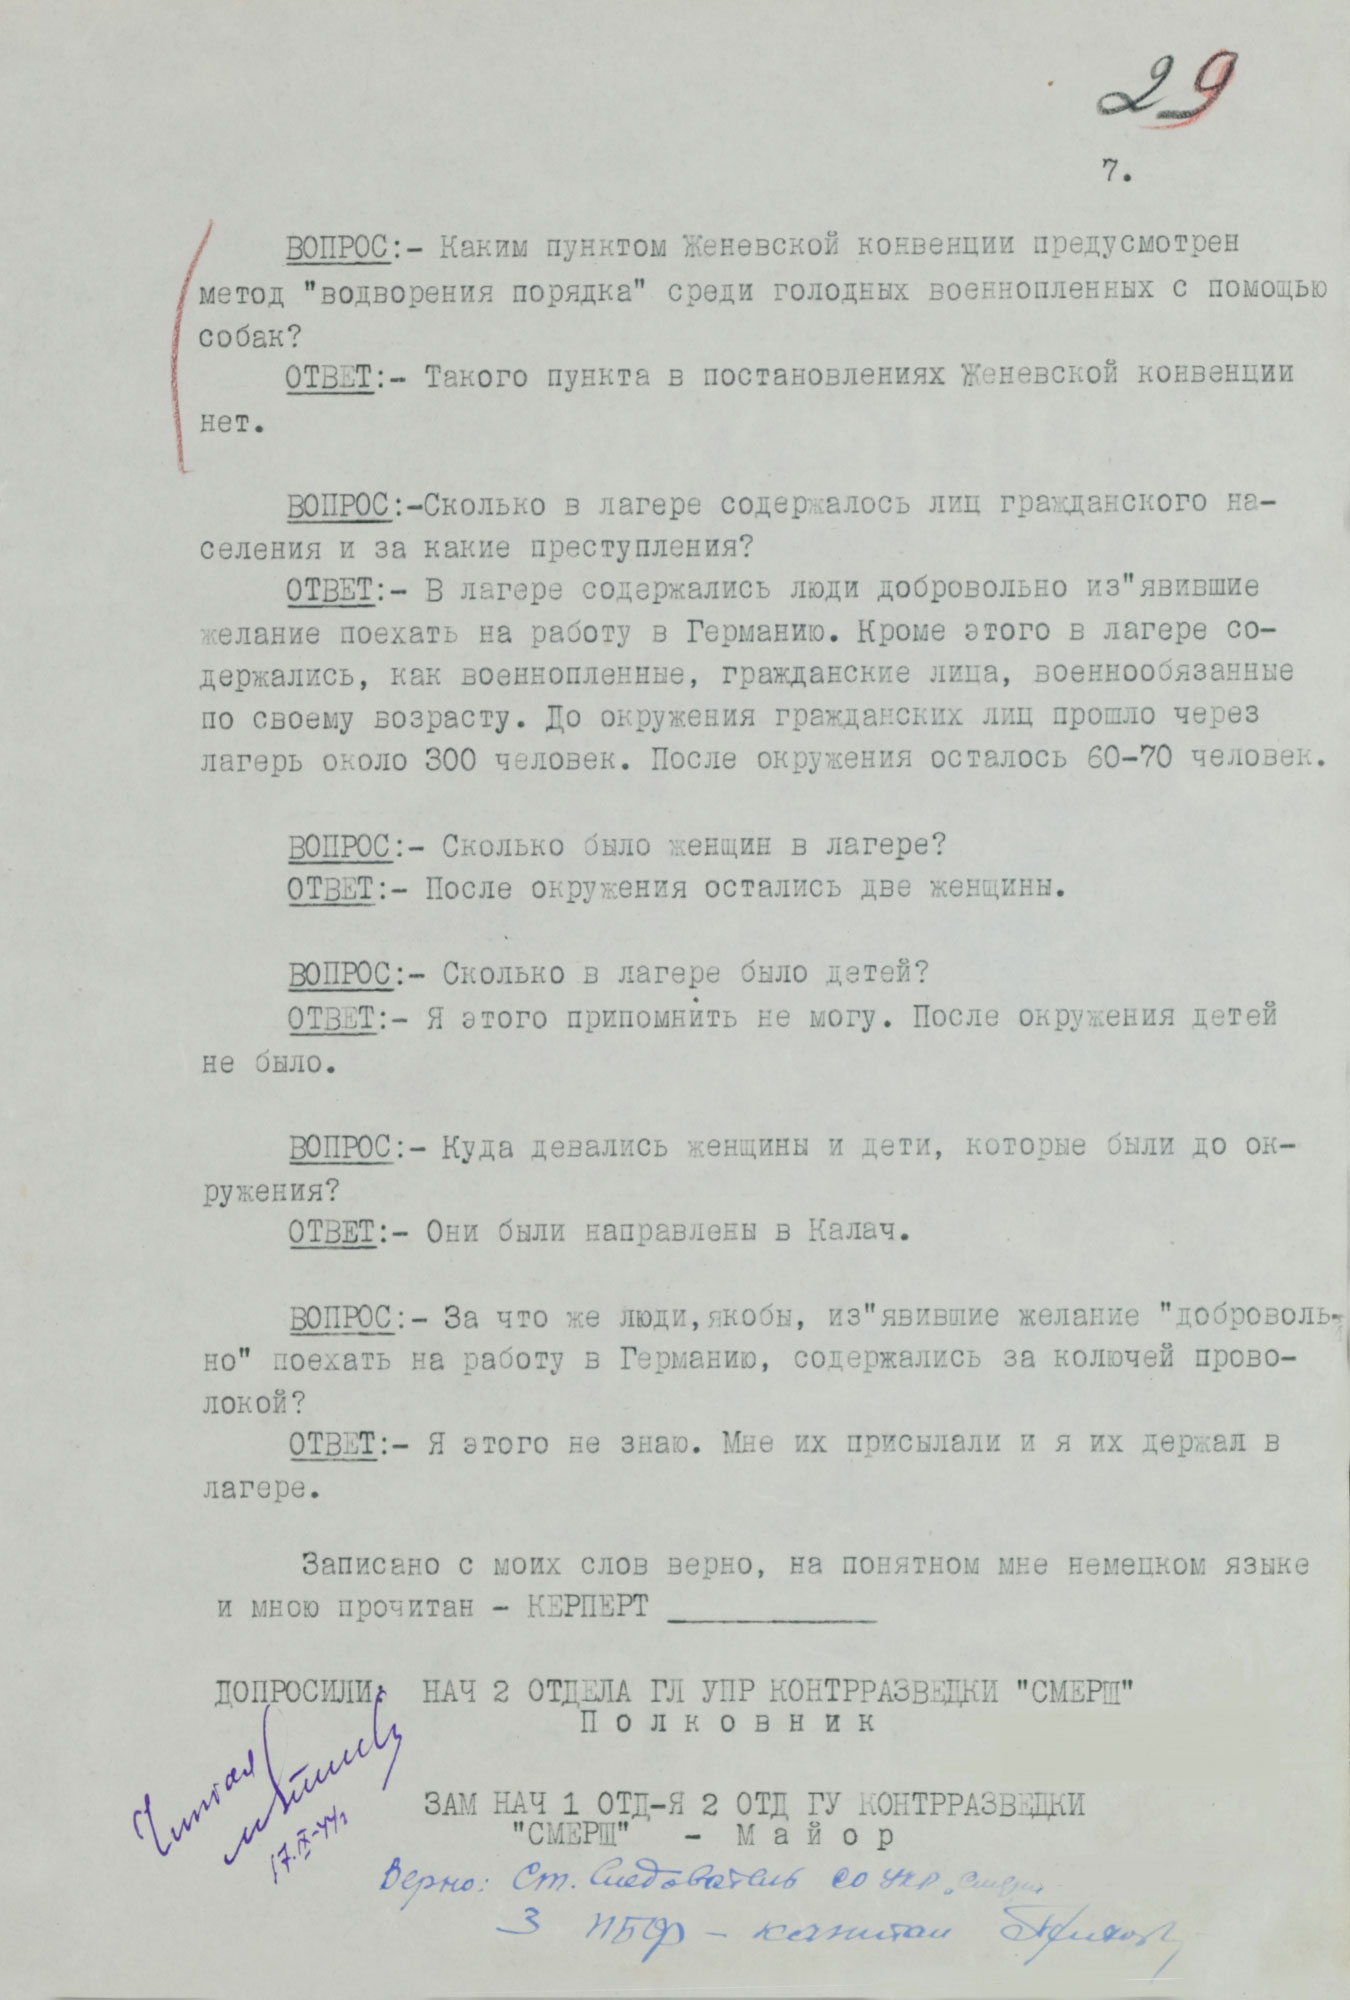 Протокол допроса военнопленного полковника германской армии КЕРПЕРТА Рудольфа, коменданта «Дулаг-205». 23 июня 1943 г. Страница 7